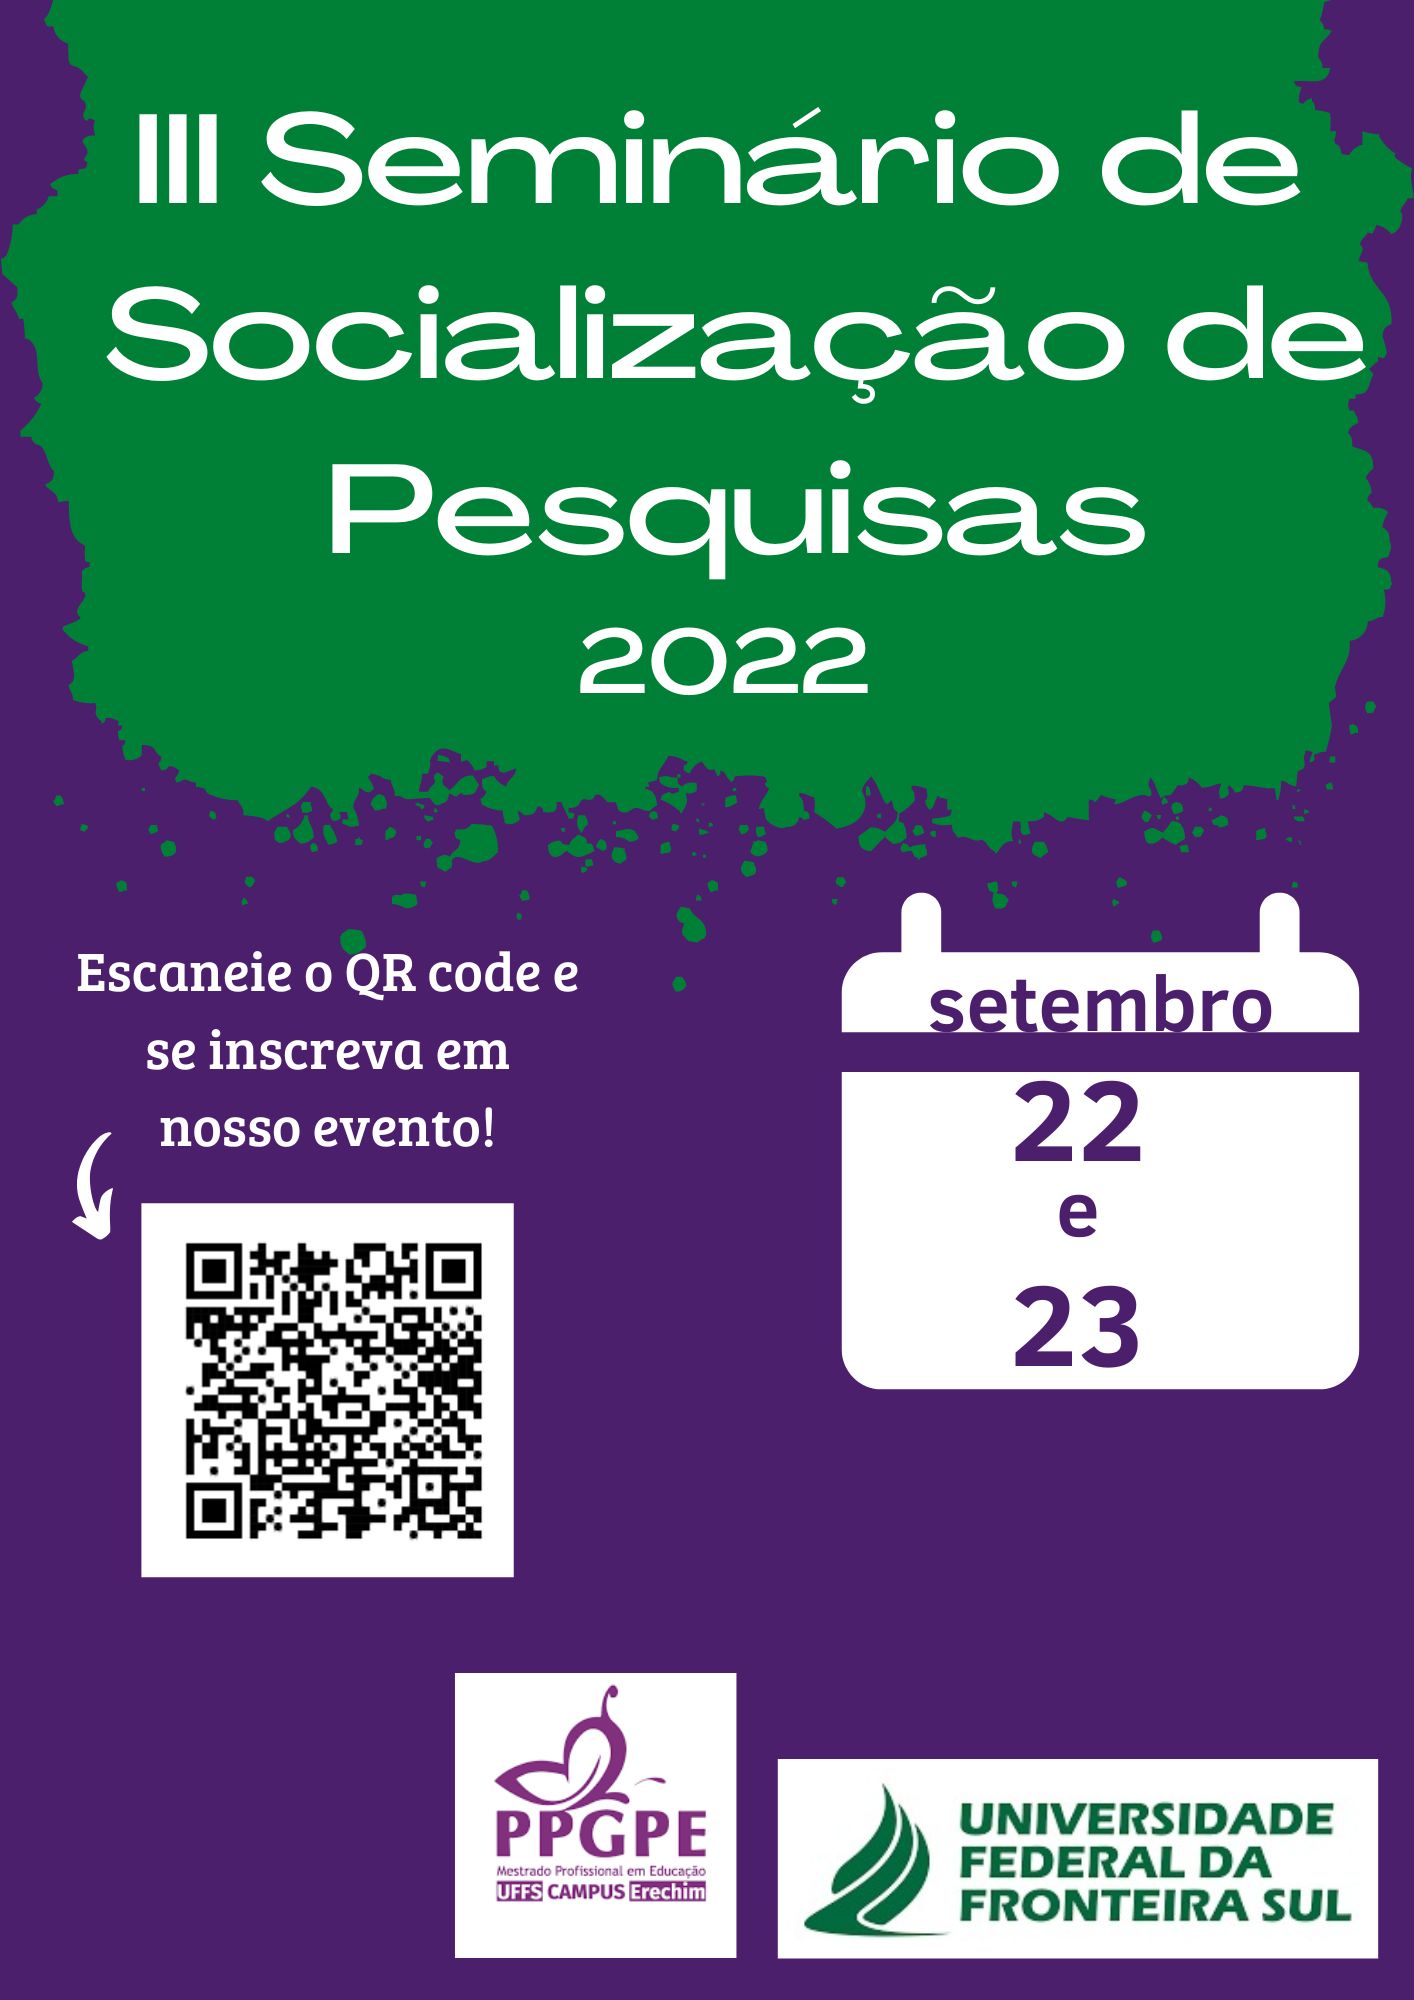 III Seminário de Socialização de Pesquisas do PPGPE